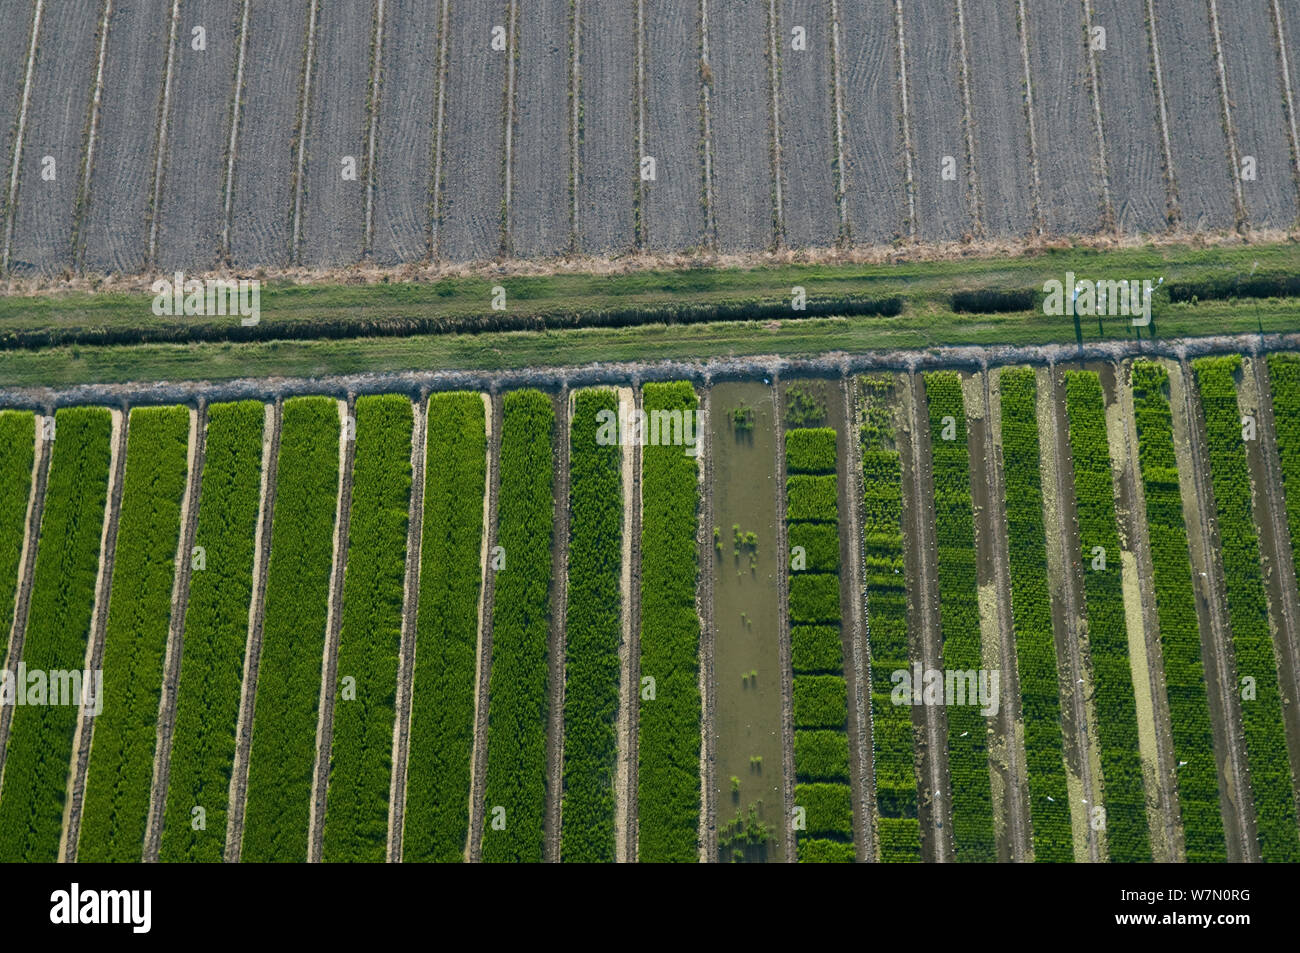 Luftaufnahme von Trial site von verschiedenen Reissorten Oryza (sp) Französische Reis Zentrum, Camargue, Südfrankreich, Juli 2010 Stockfoto